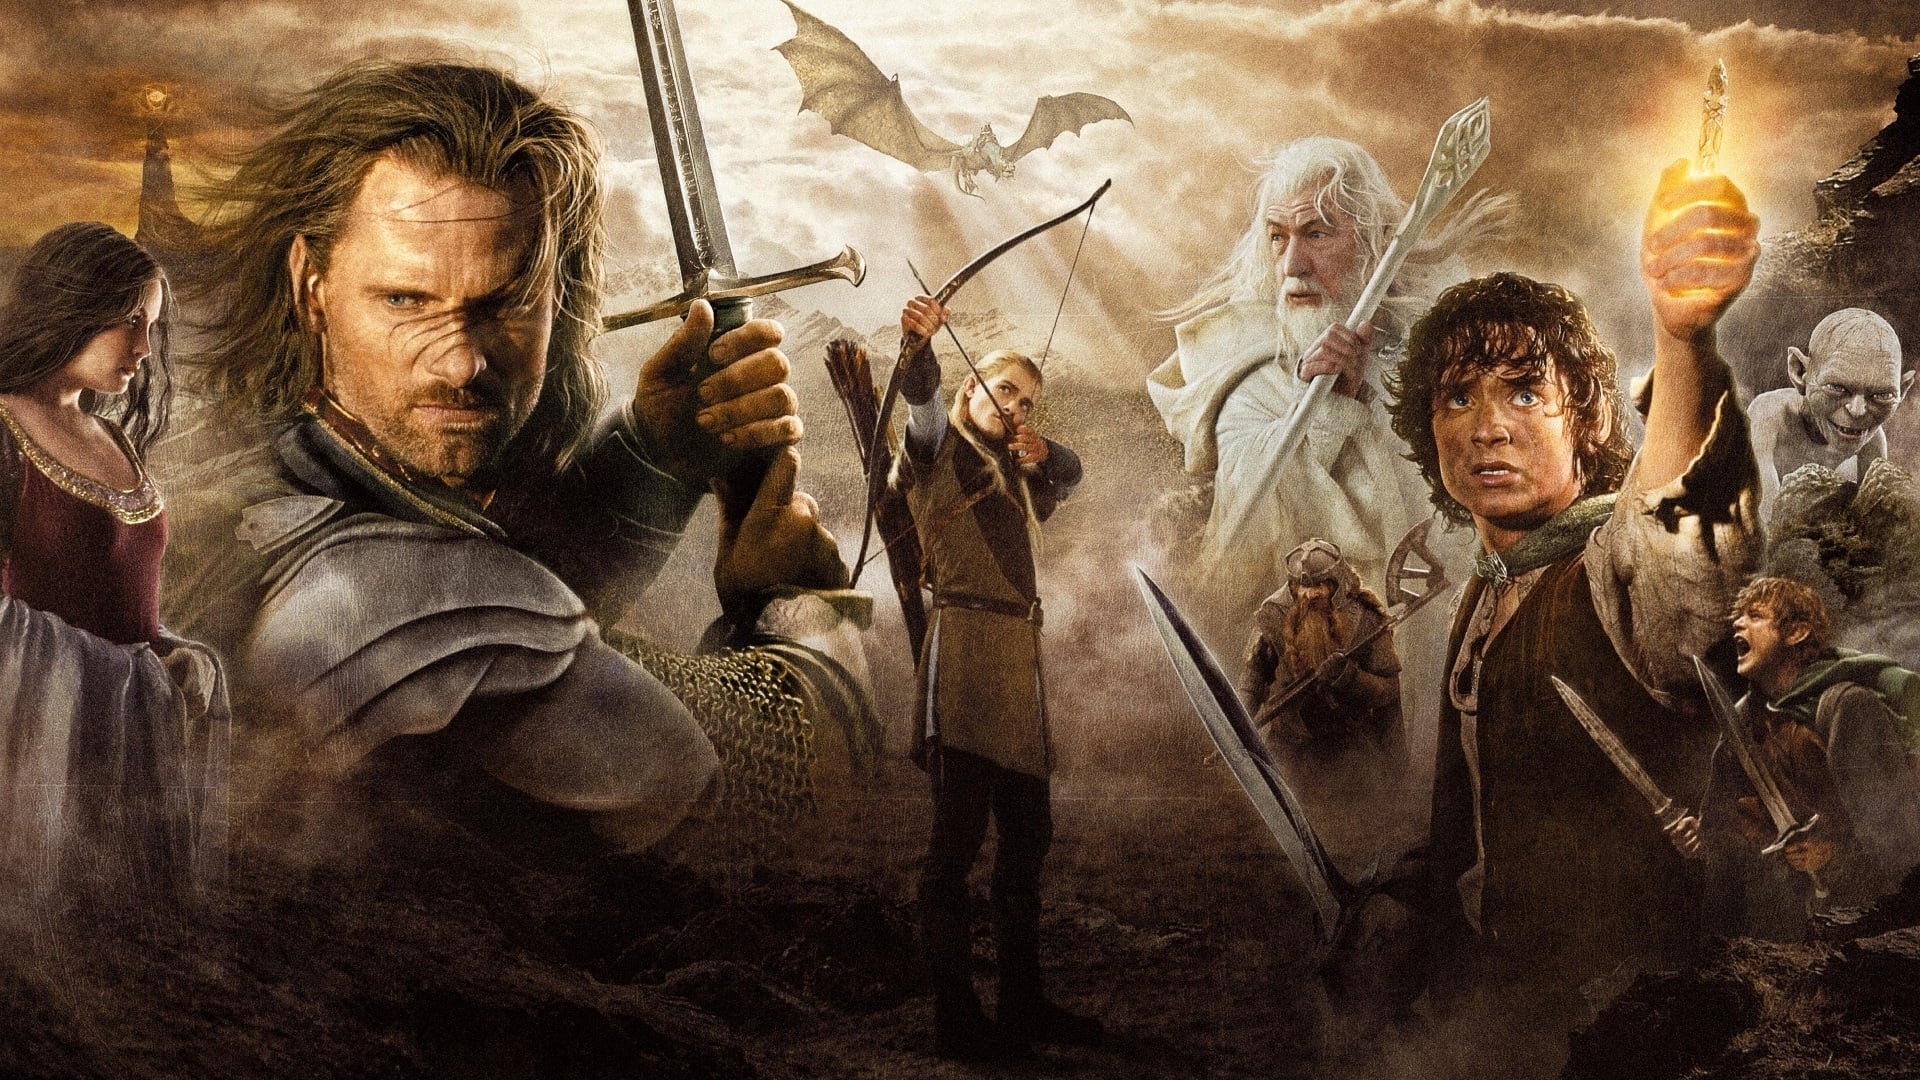 Pozadi k filmu Pán prstenů: Návrat krále / The Lord of the Rings: The Return of the King rok 2003 